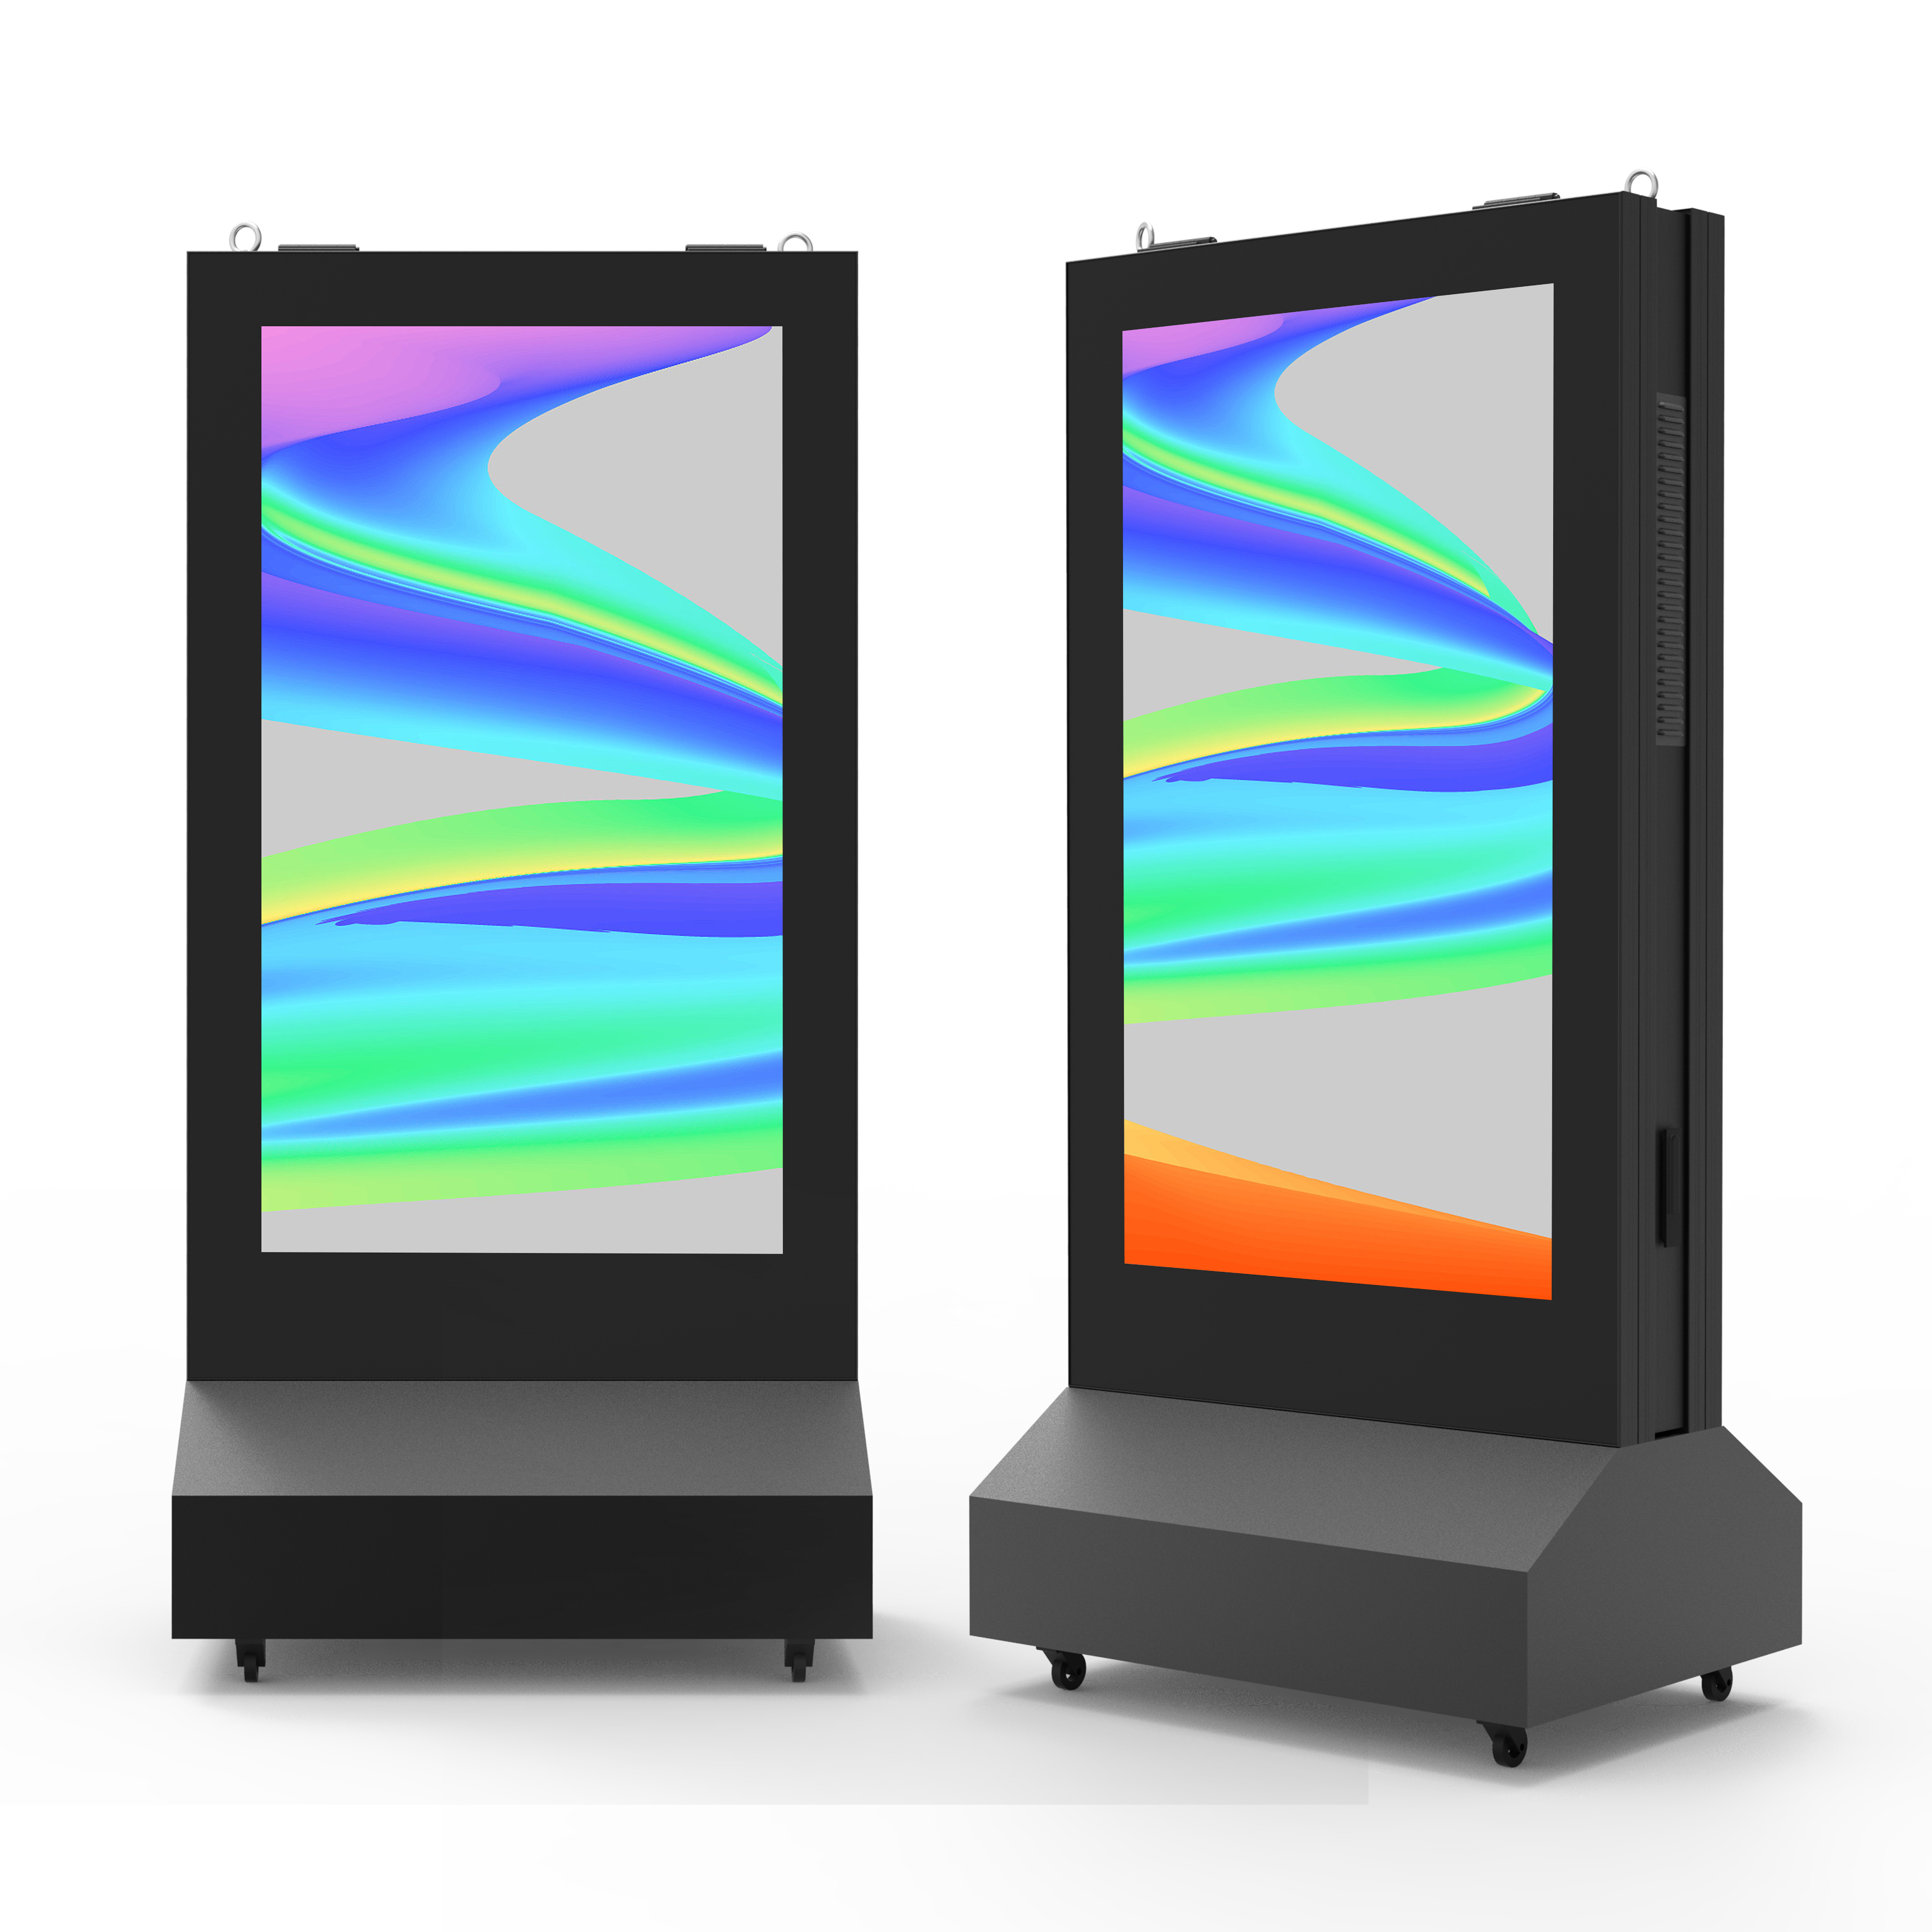 مزدوج الوجه LCD الرقمية لافتات البطارية تعمل بالطاقة